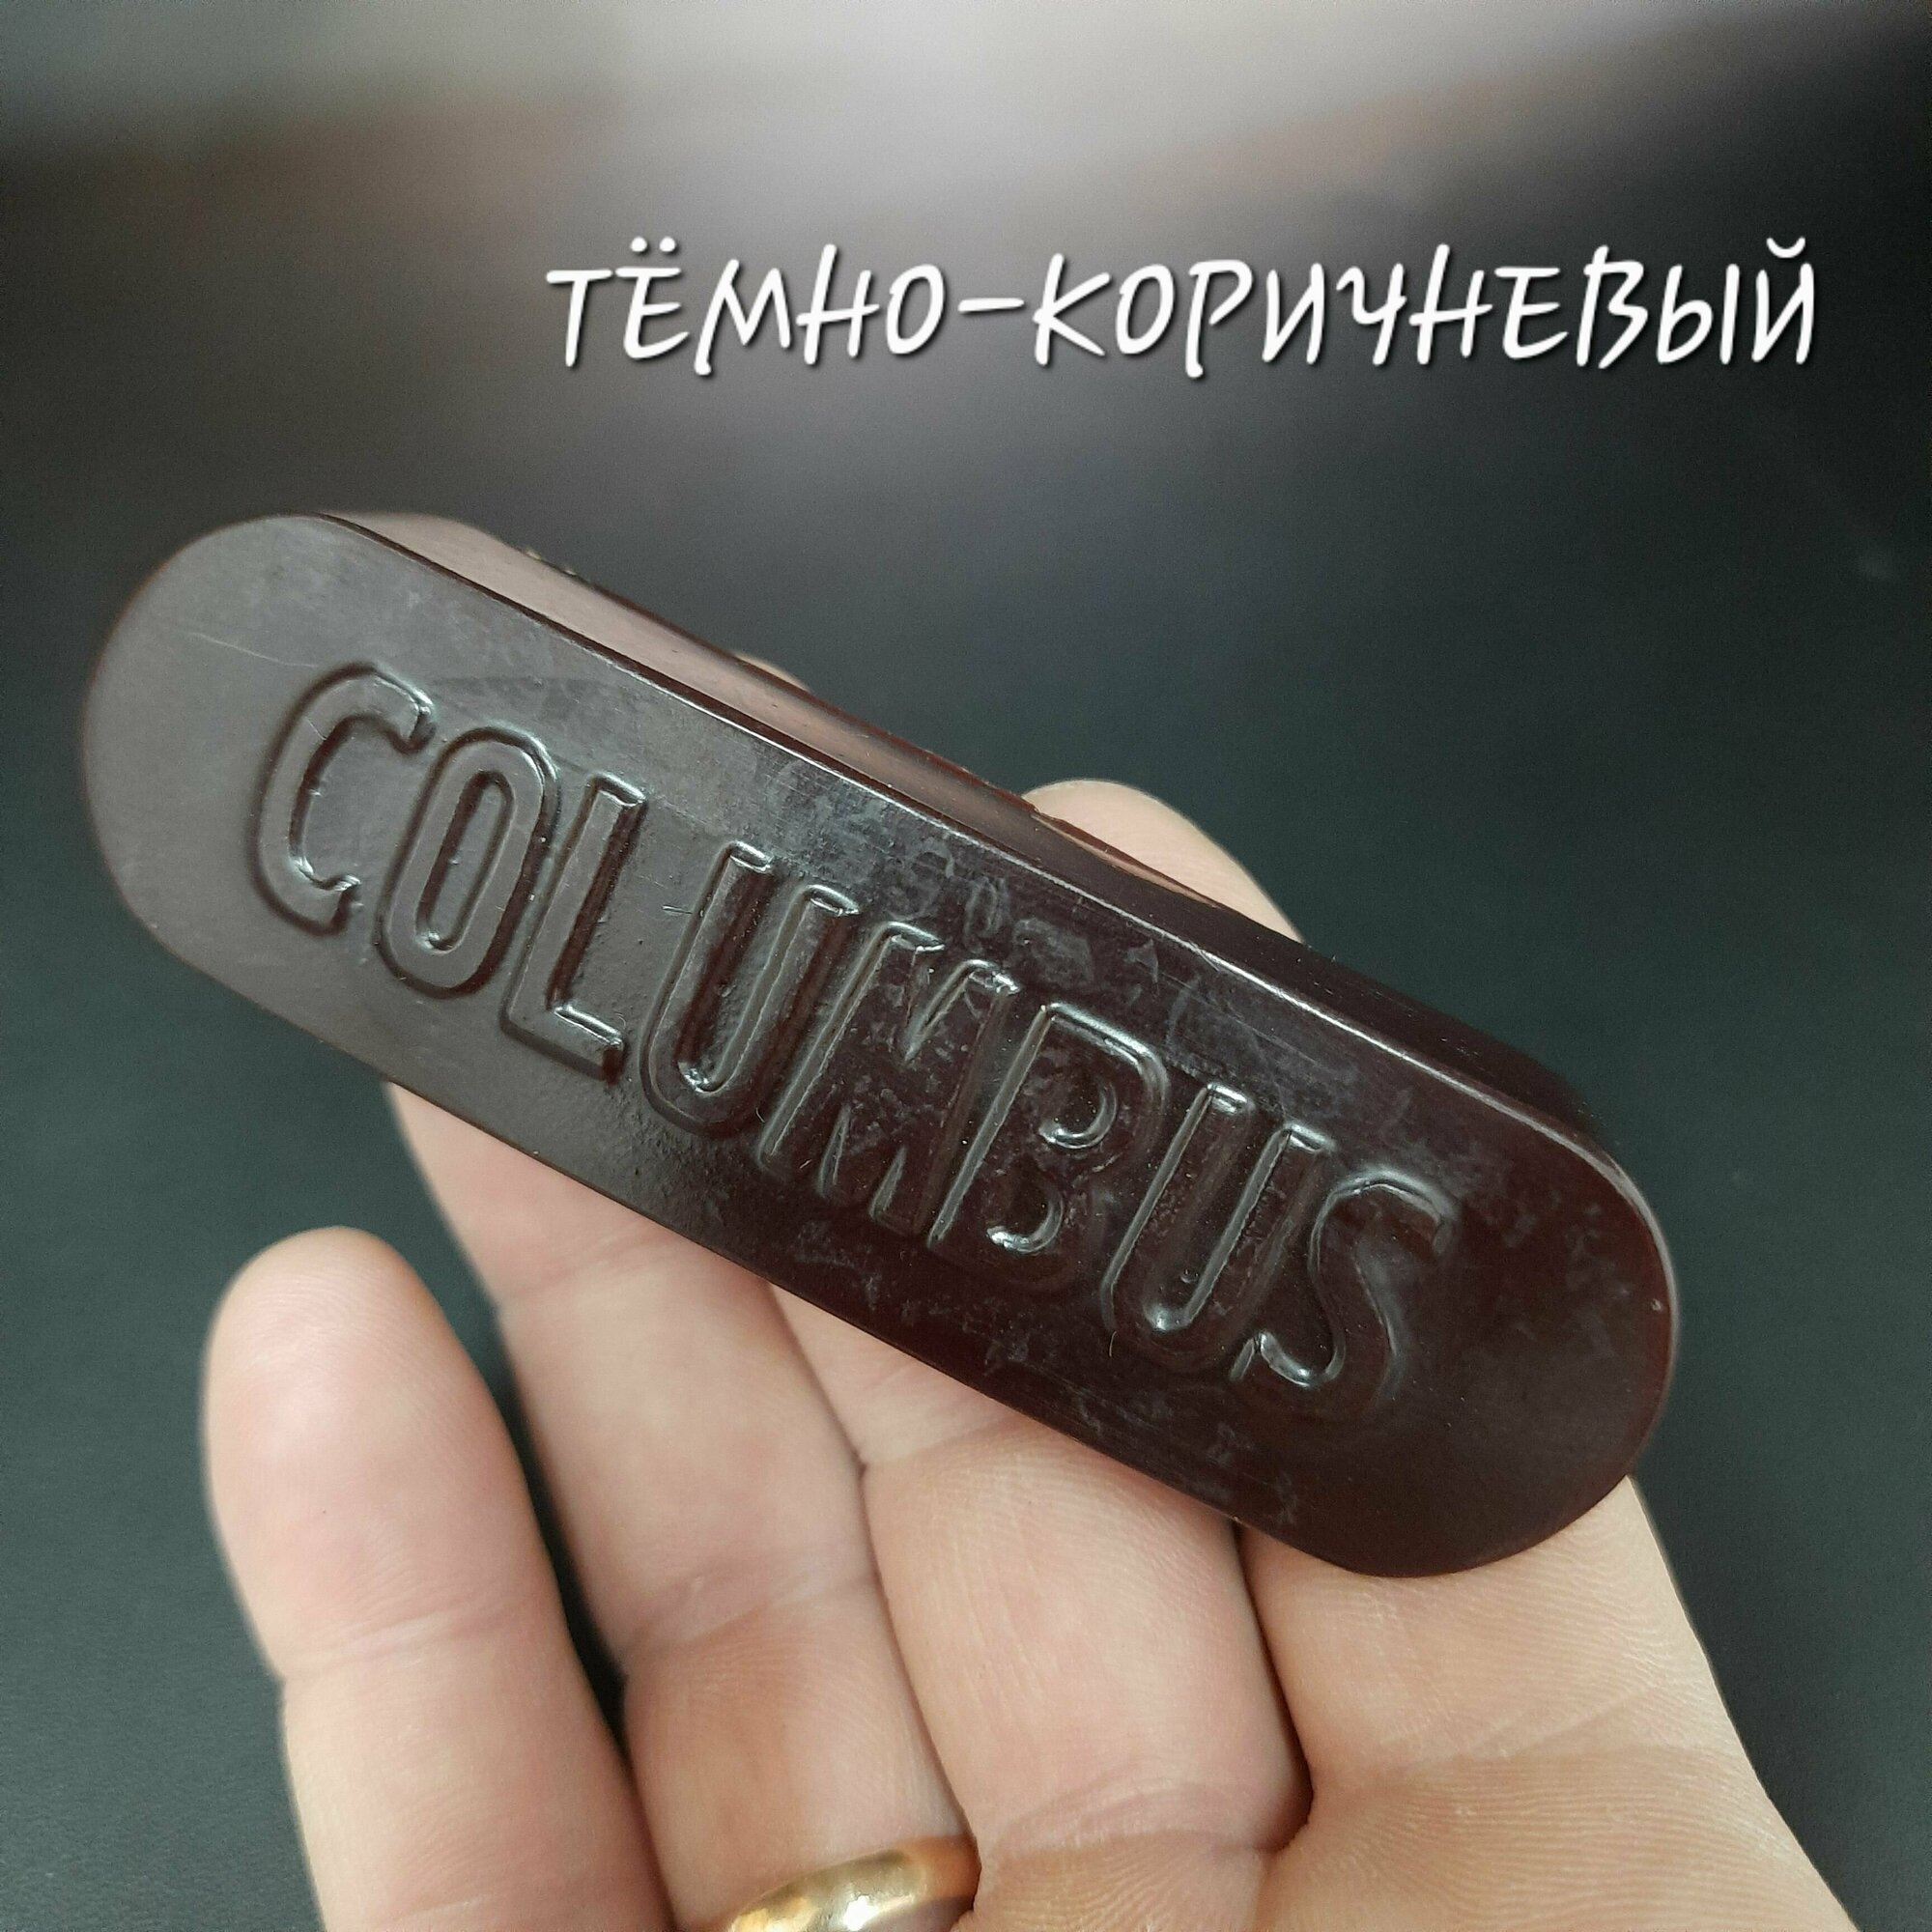 Воск для уреза "COLUMBUS" (Коламбус) цвет тёмно-коричневый